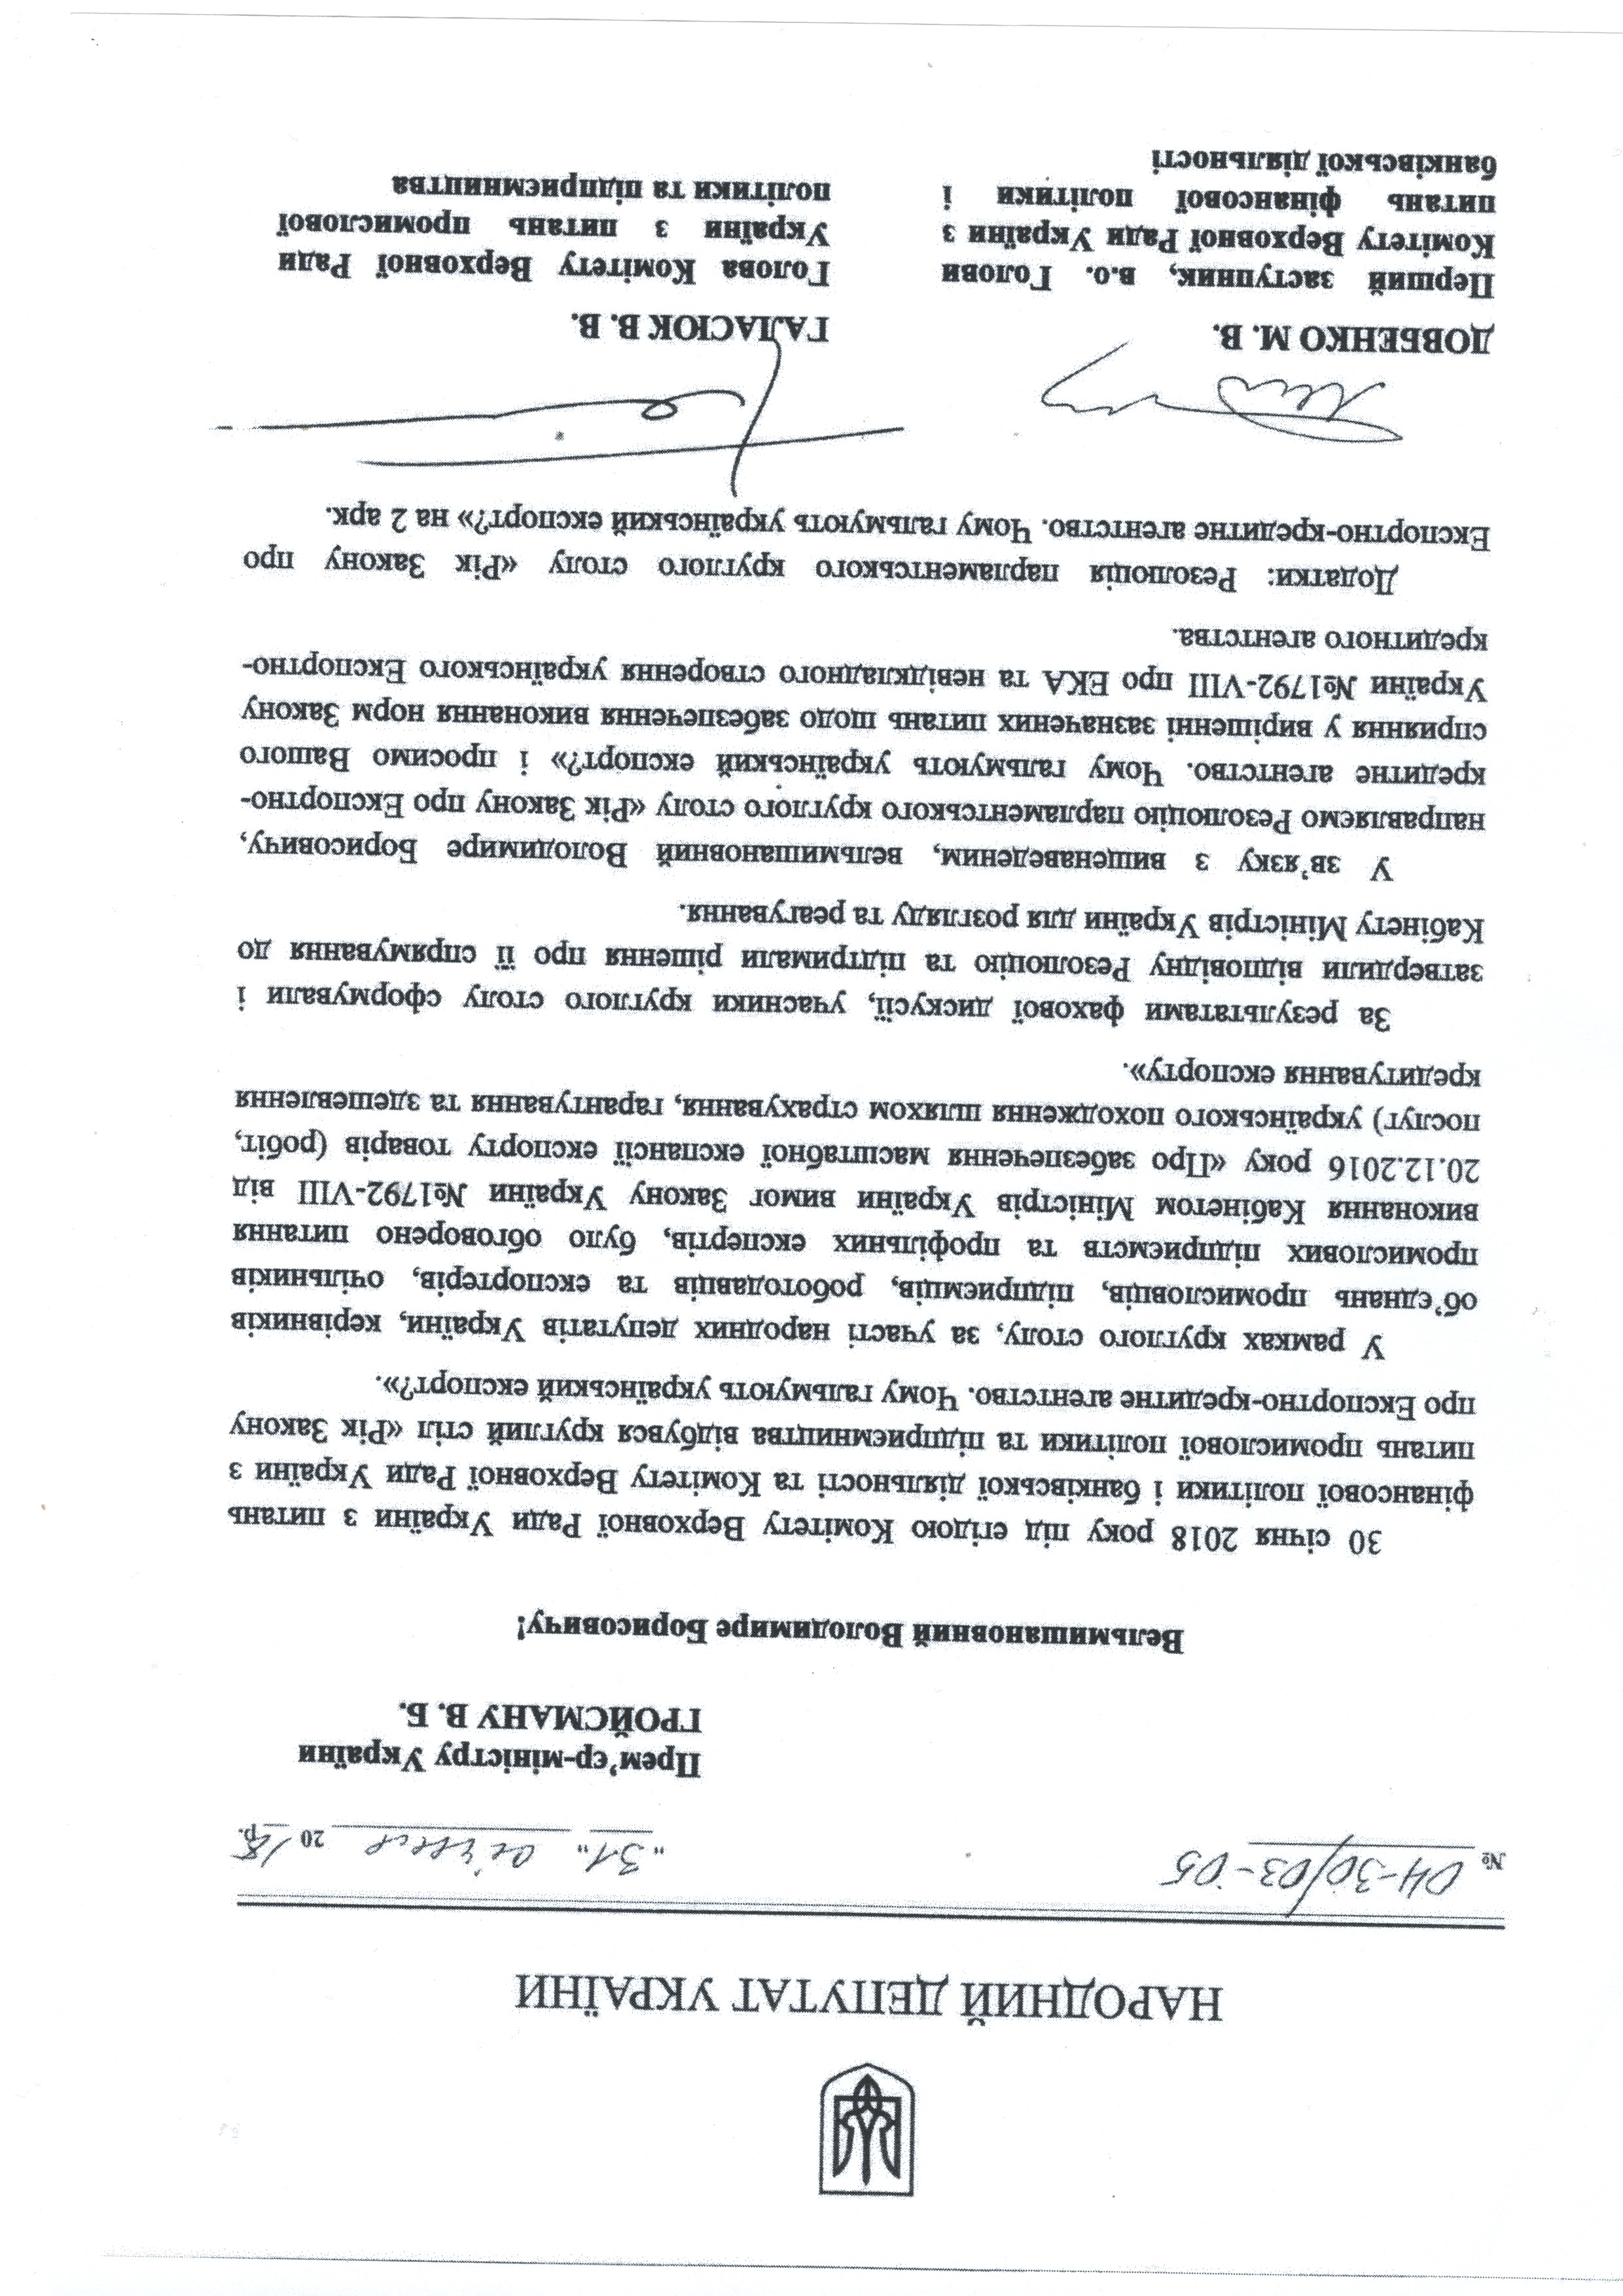 Додаток до листа від народного депутата Віктора Галасюка